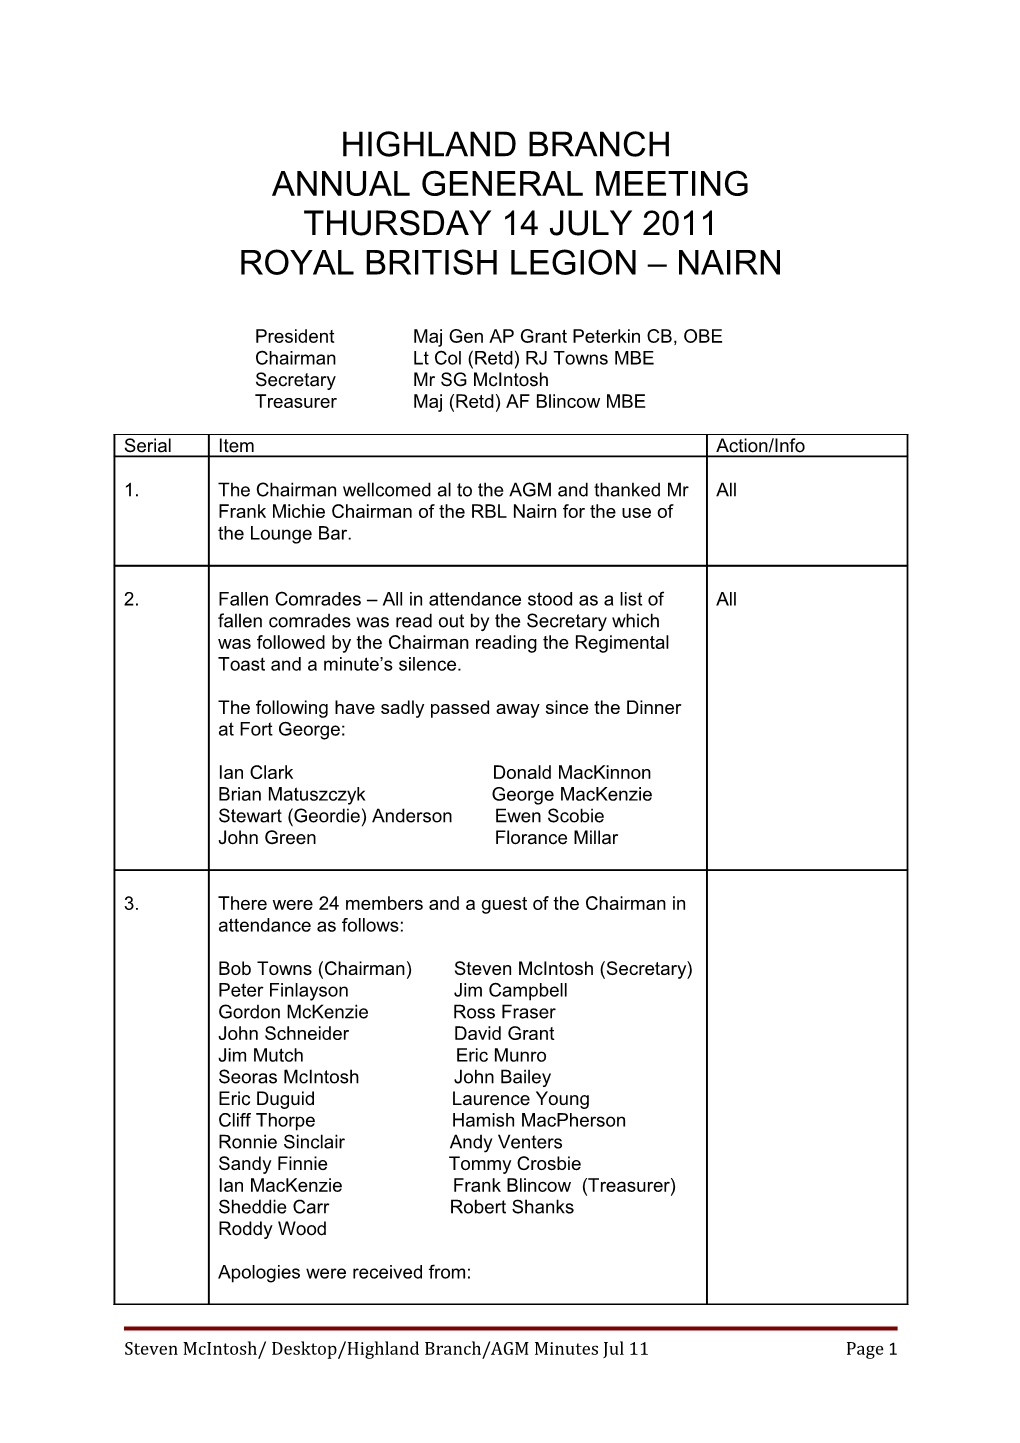 Royal British Legion Nairn